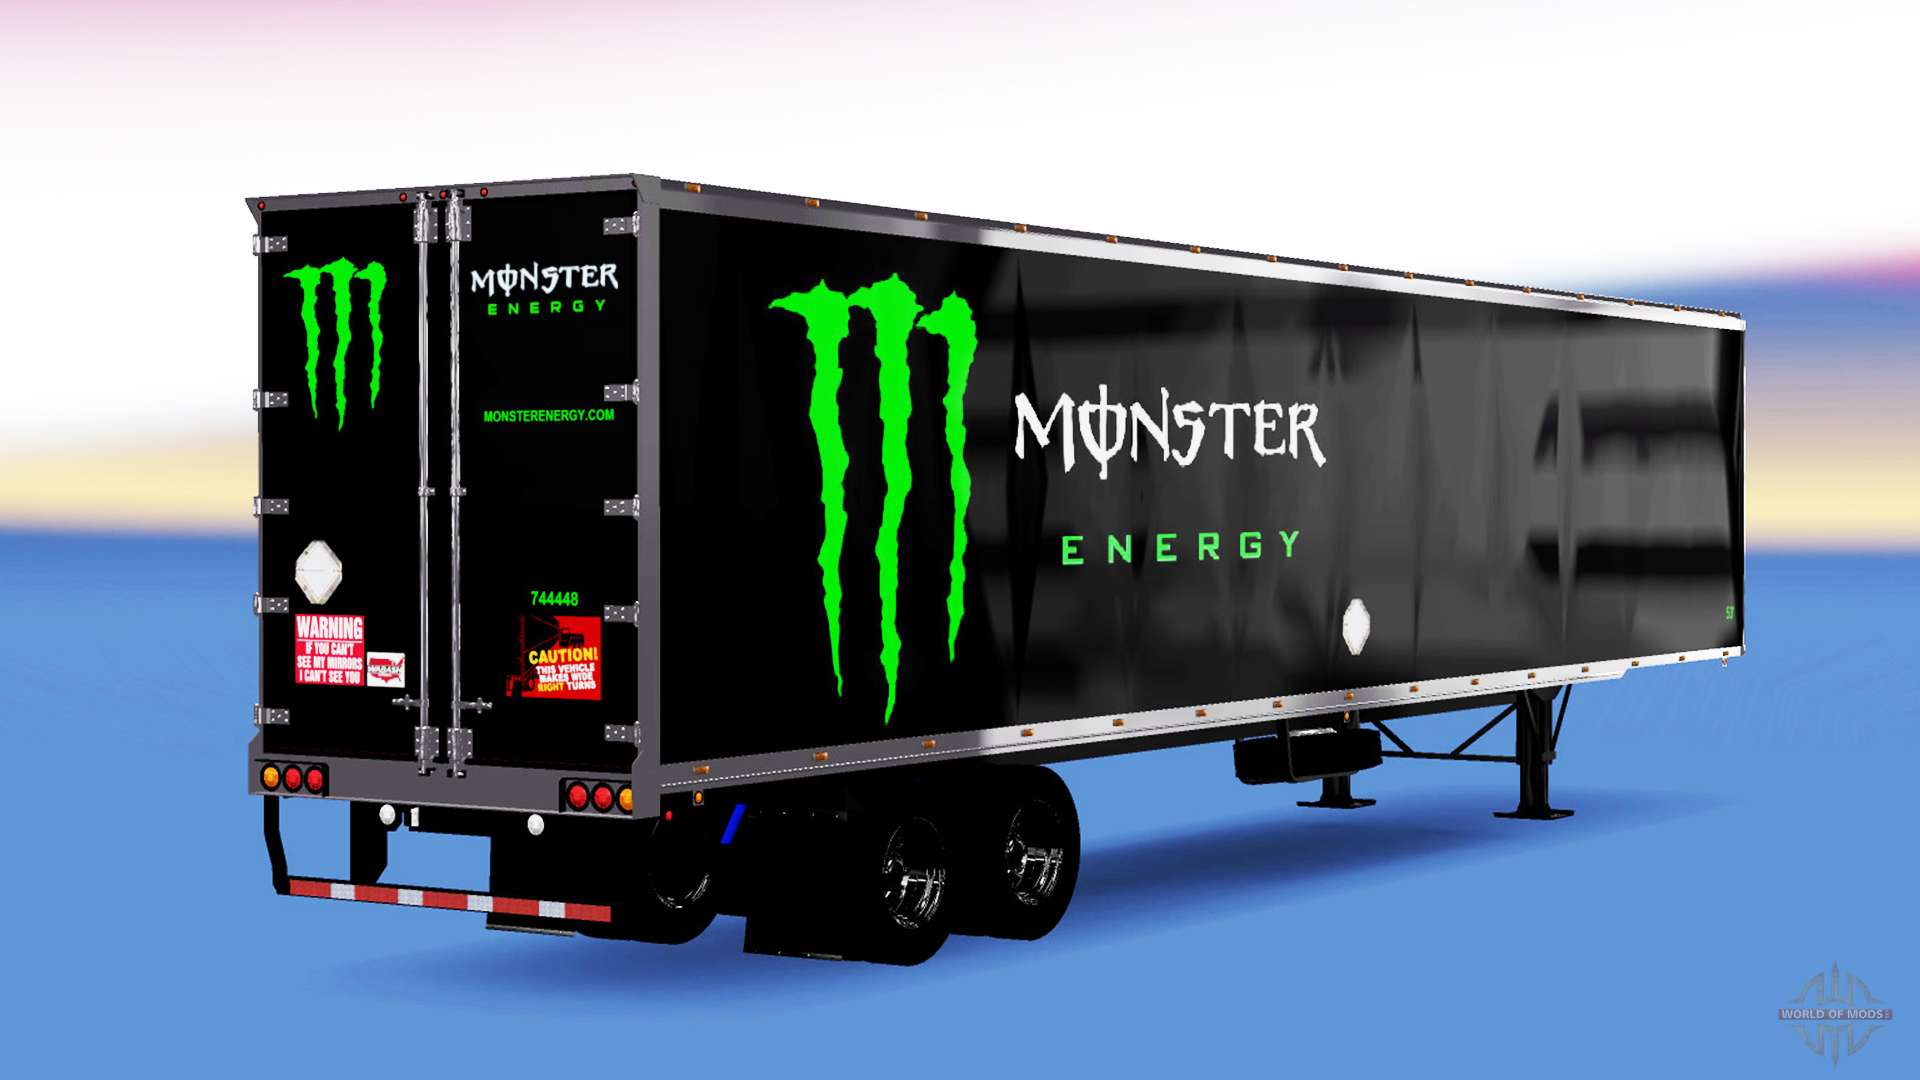 Monster Energy Truck and Trailer 